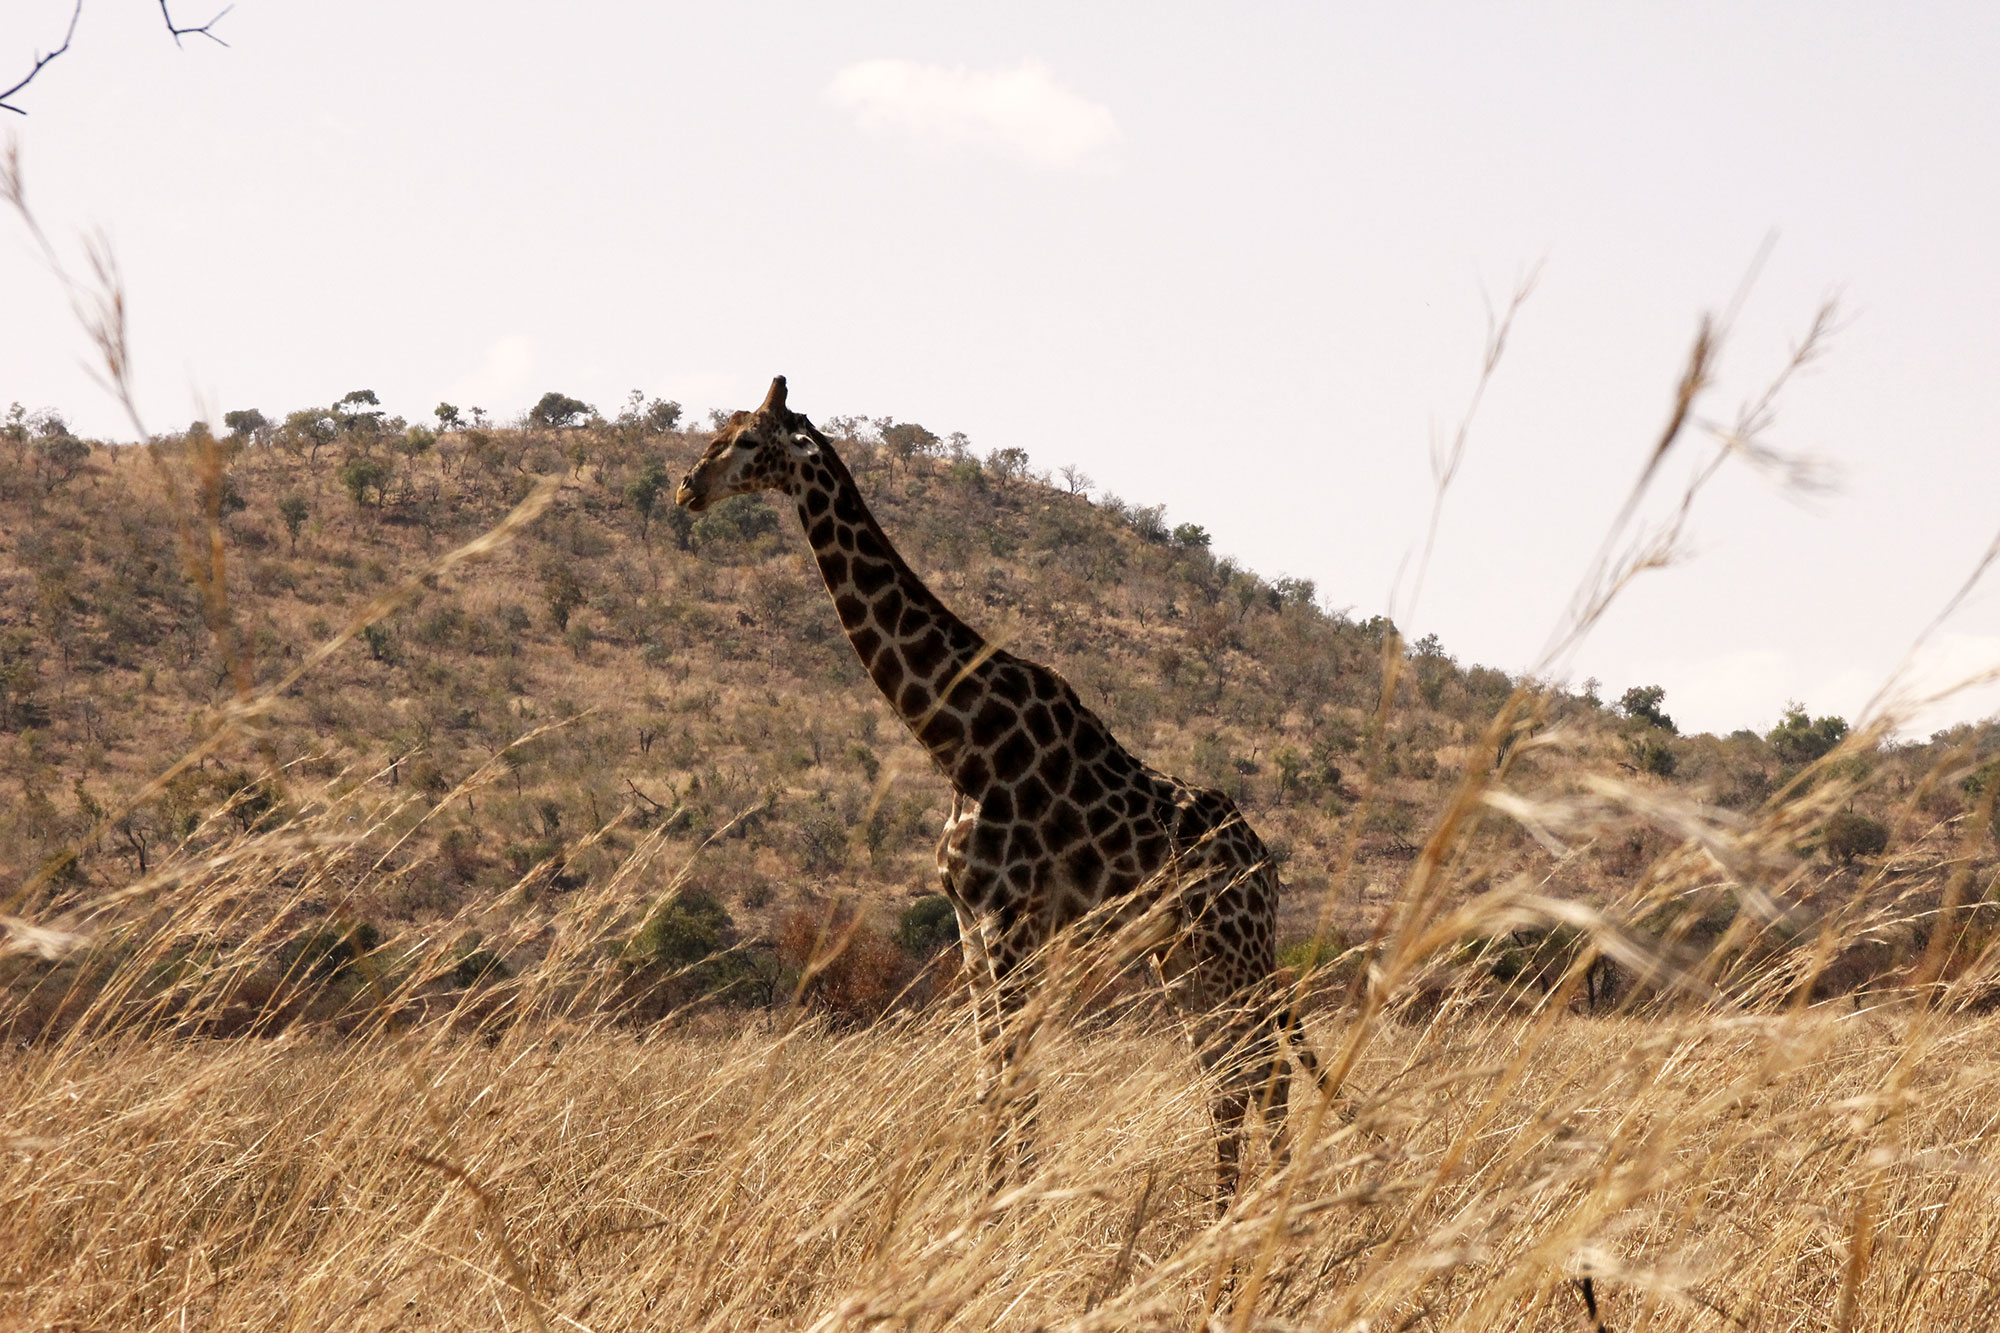 Giraffe in brown landscape in Pilanesberg